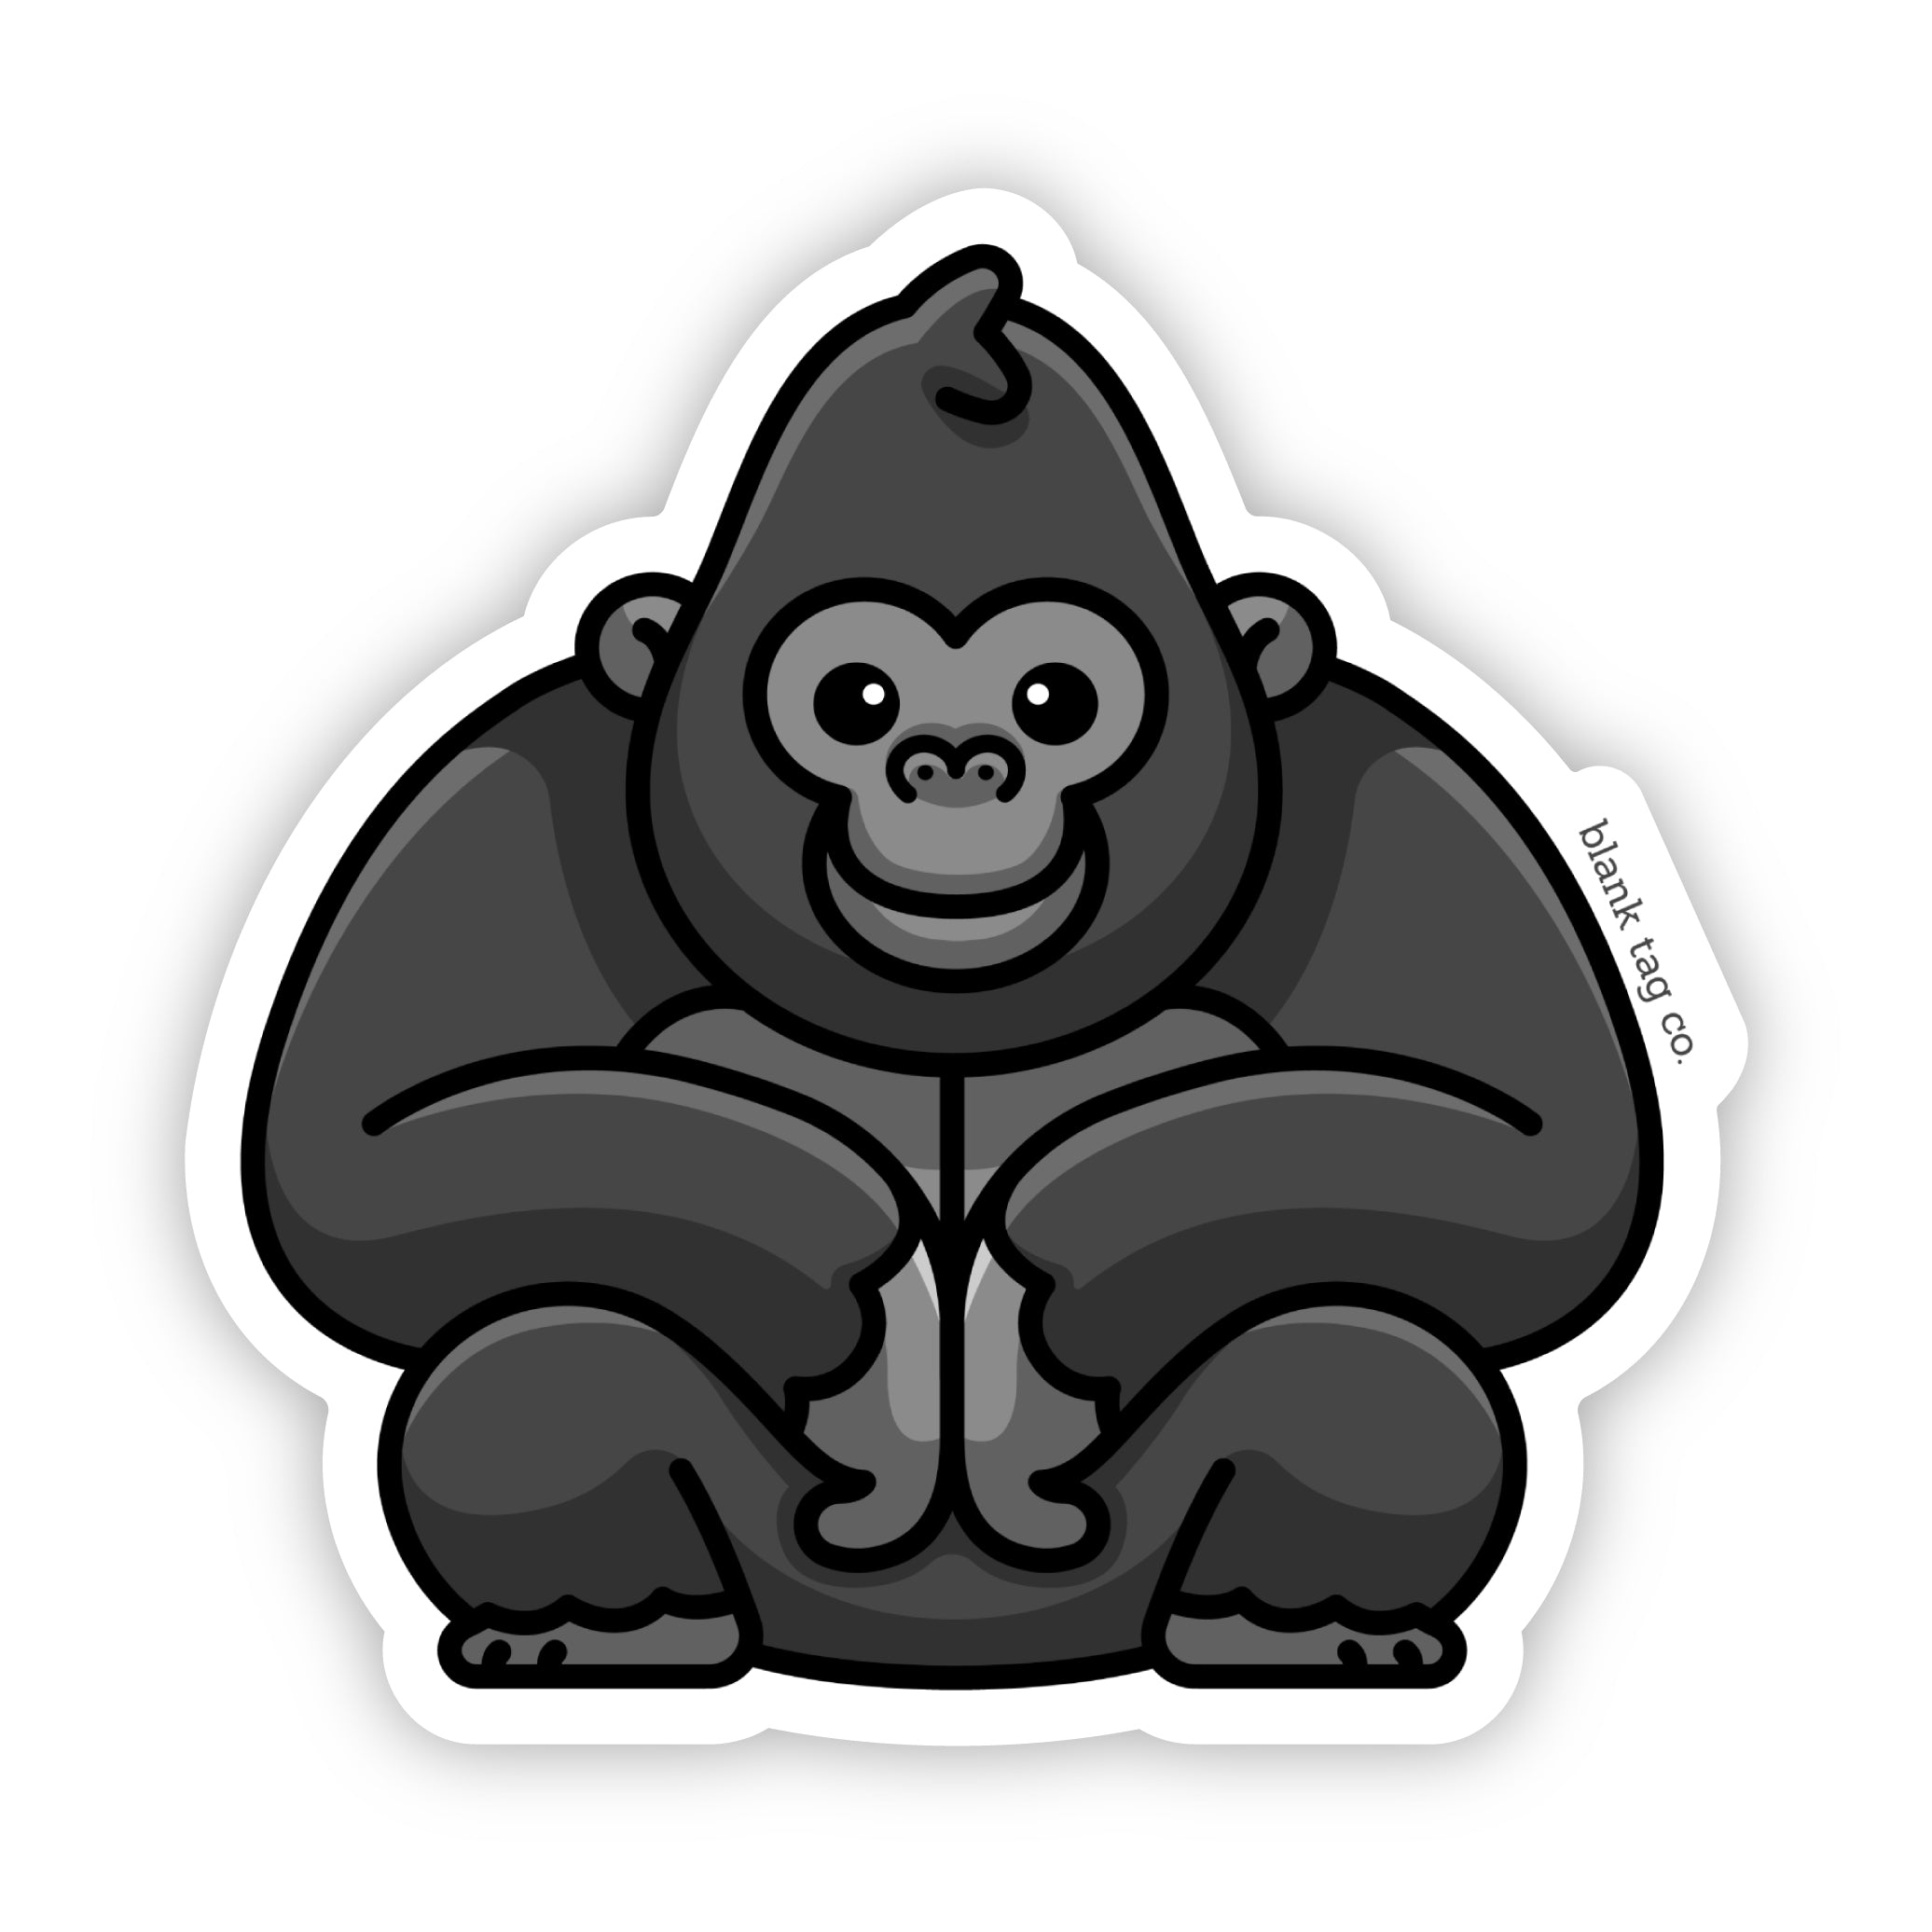 The Gorilla Sticker